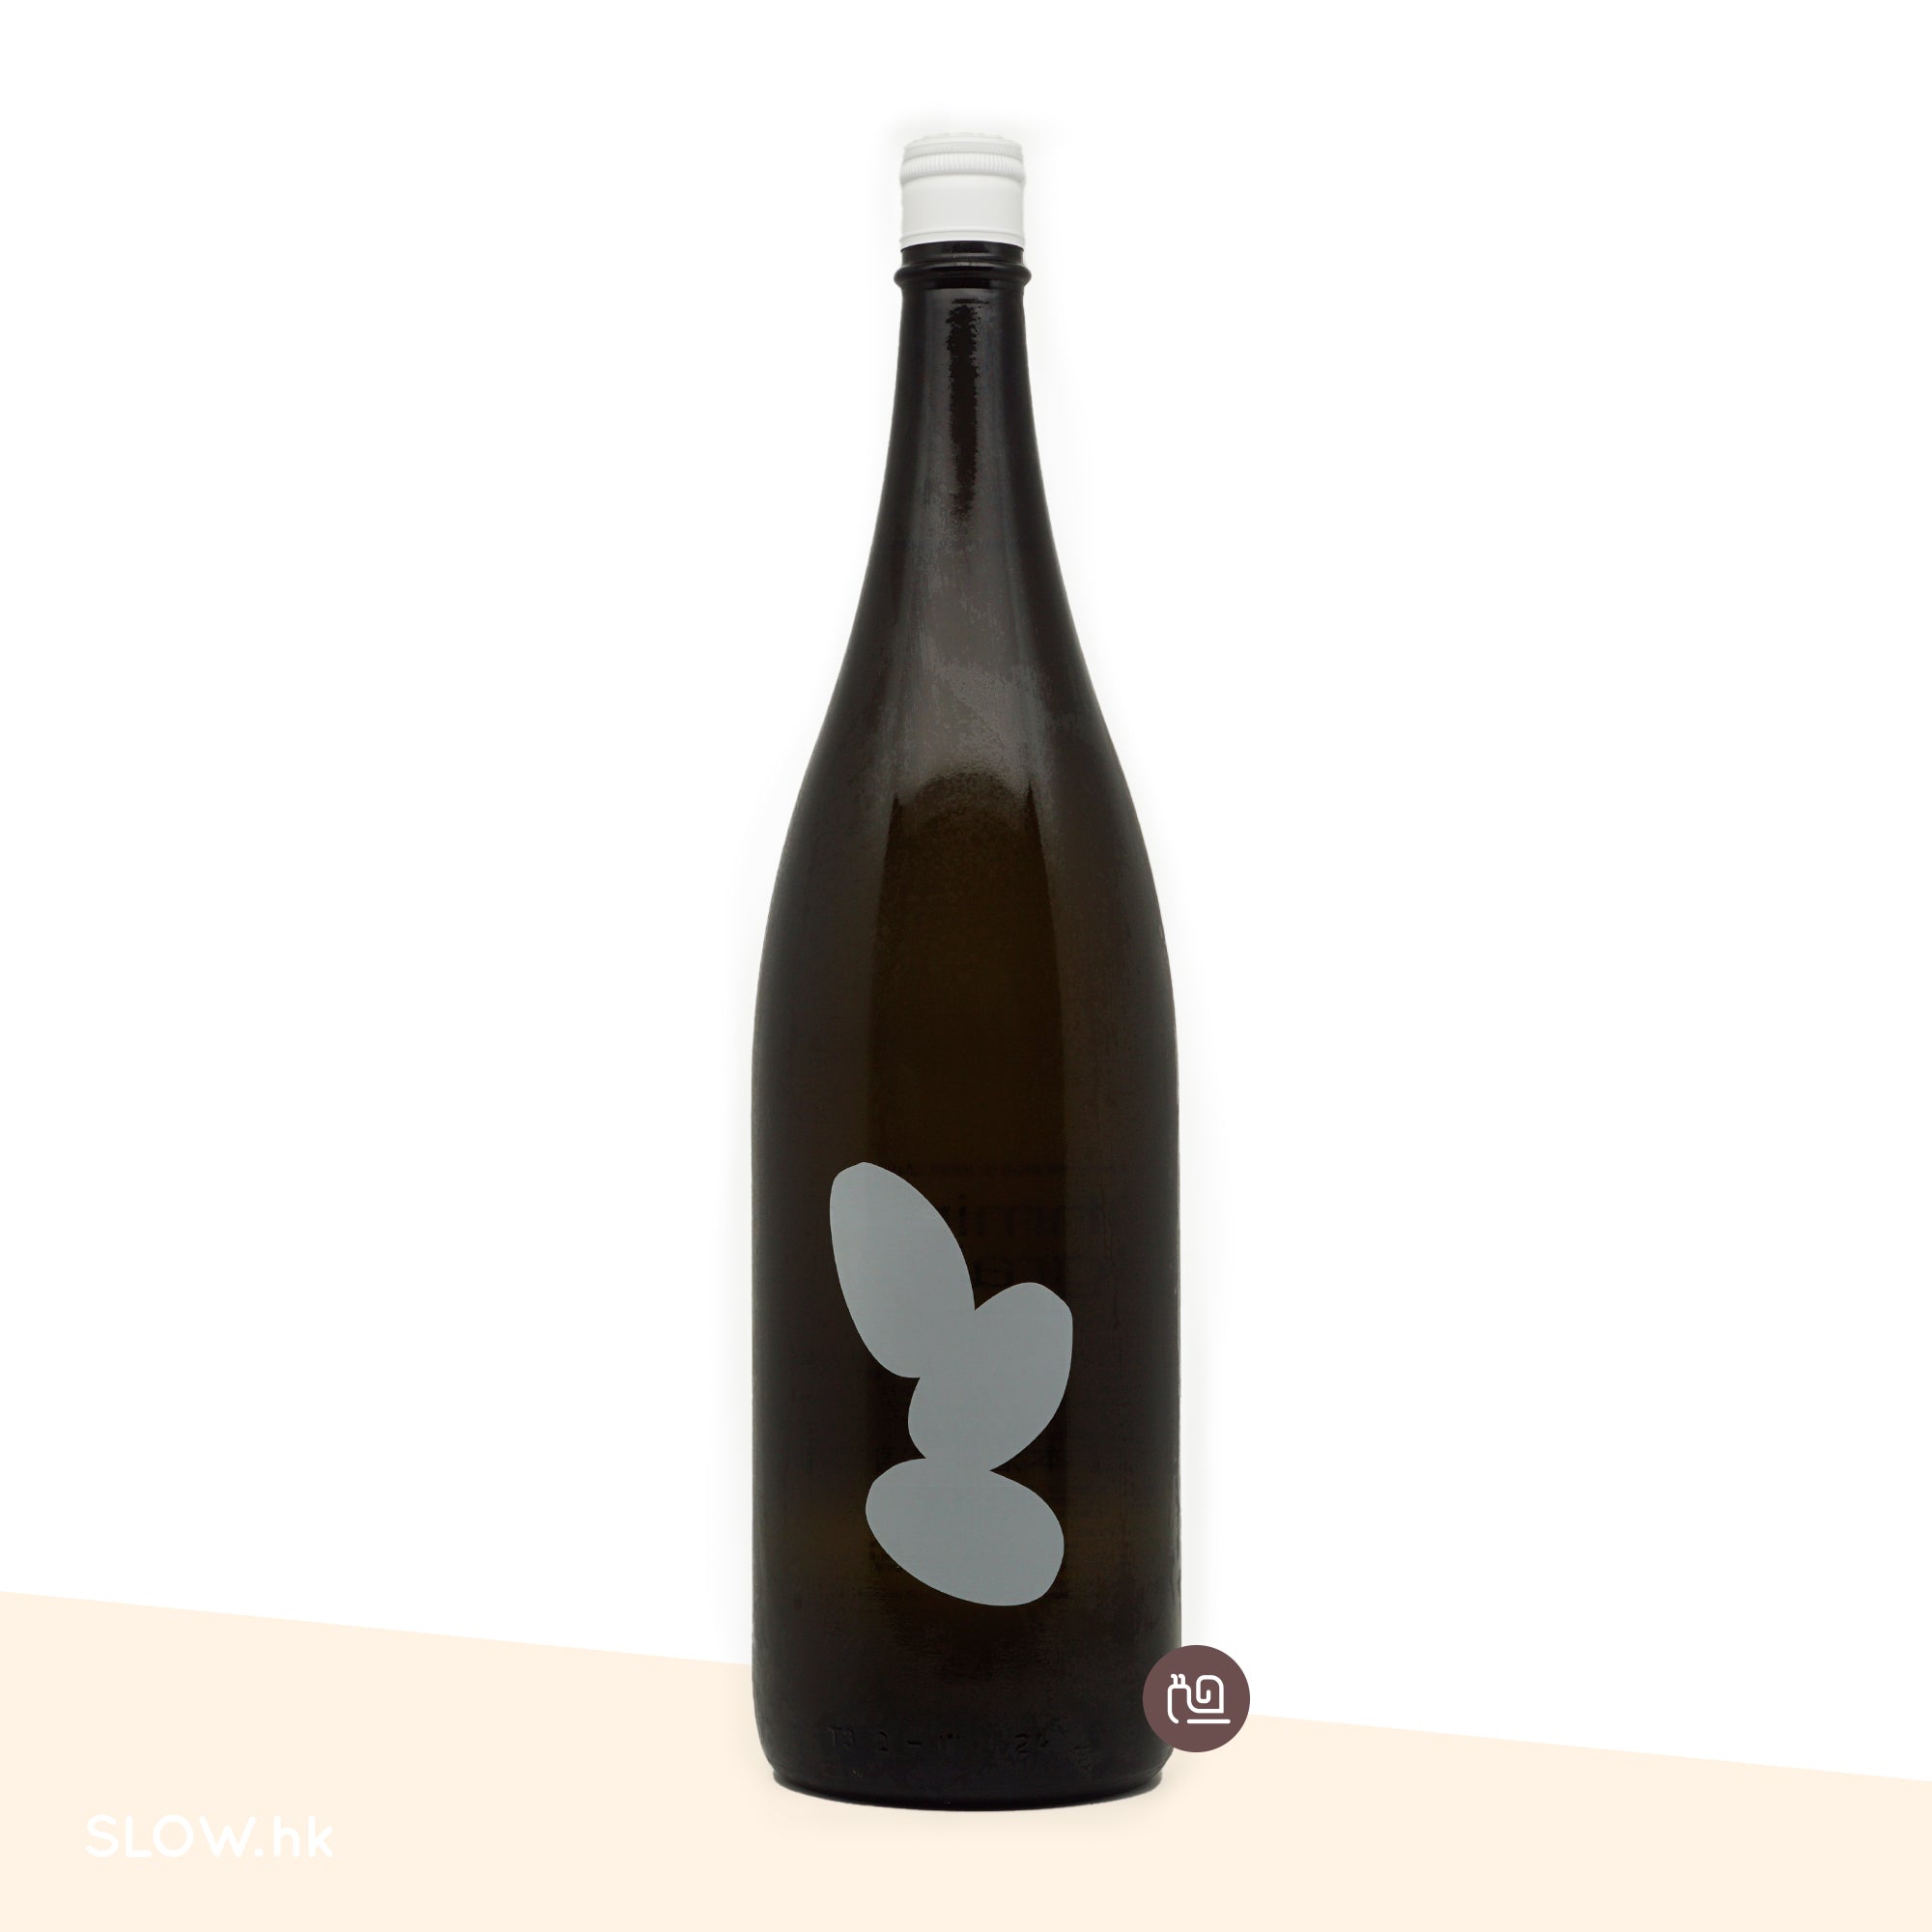 一升瓶(1800mL) 系列| 日本酒| 美酒– SLOW.hk